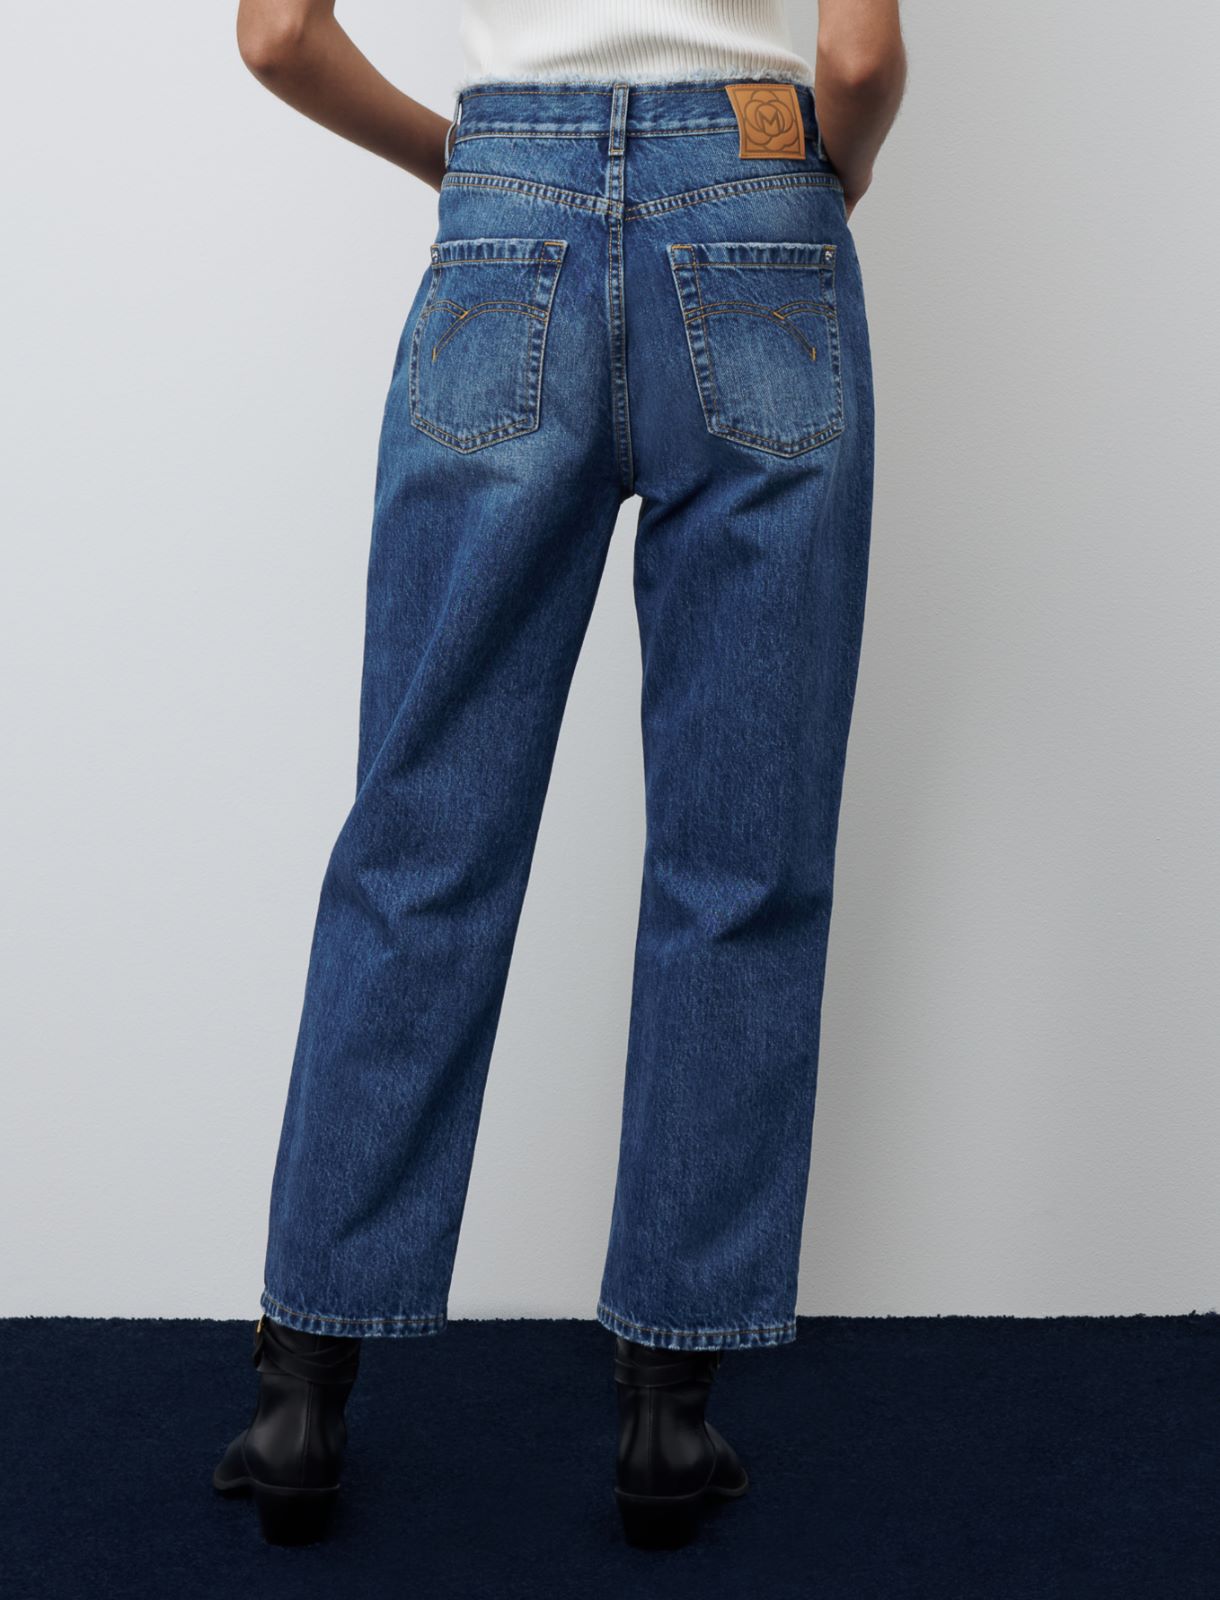 Just Jeans Levis Sale 